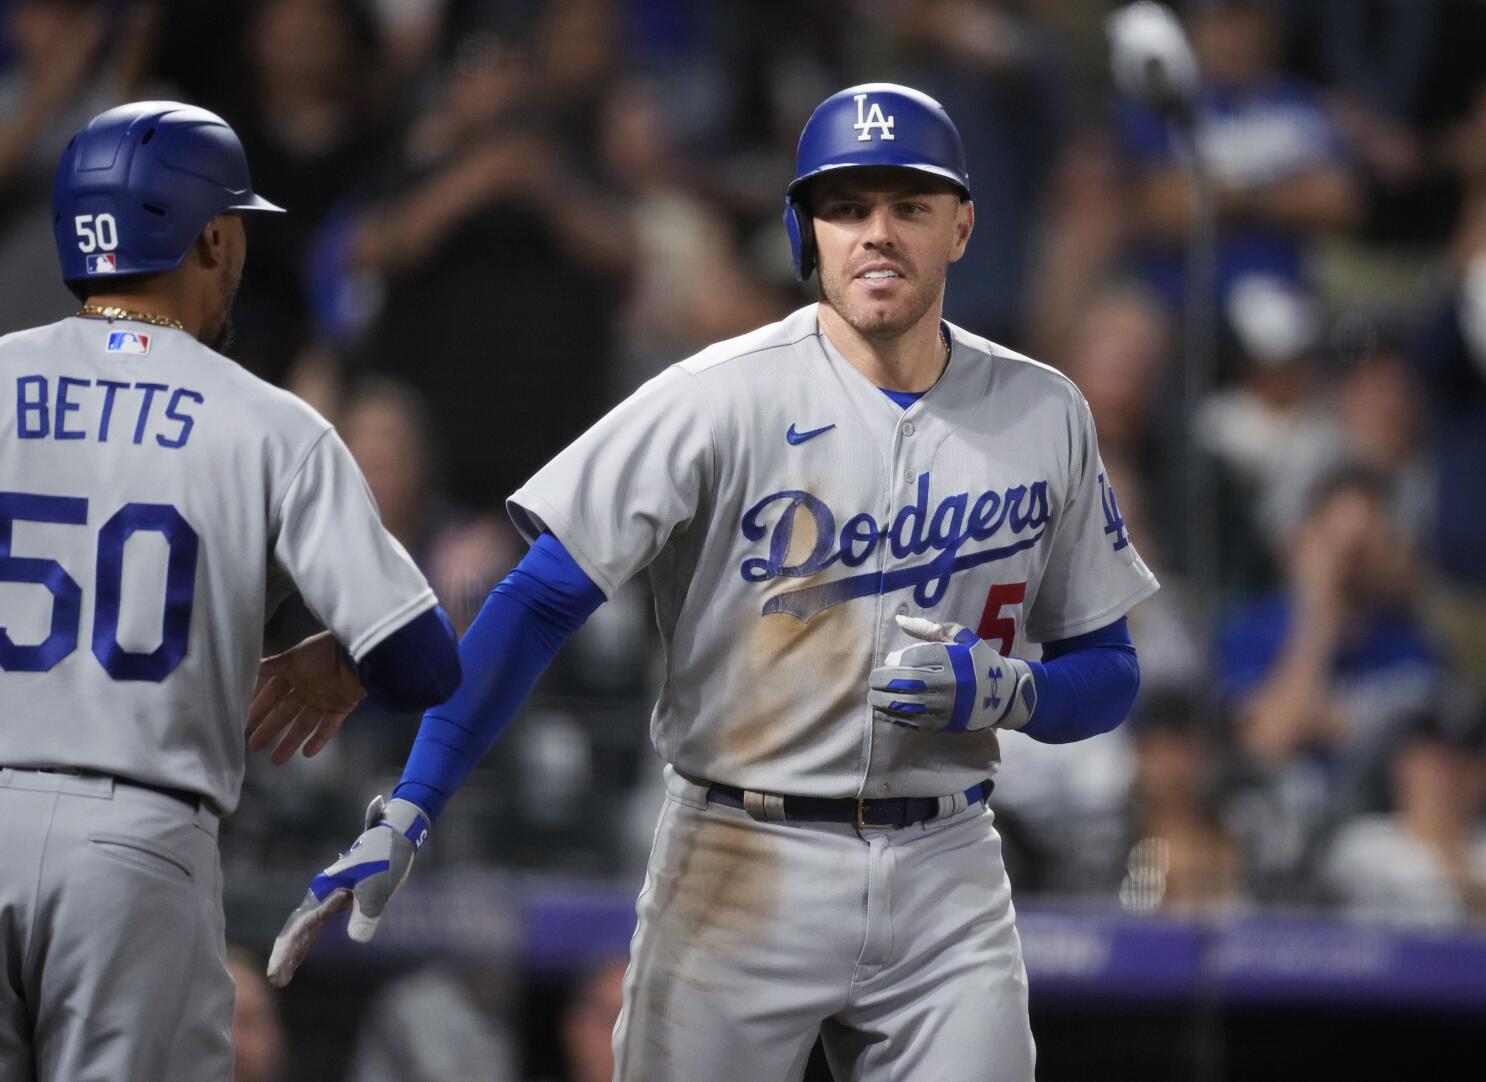 Dodgers: Freddie Freeman Earns Weekly Honors After Hot Week of